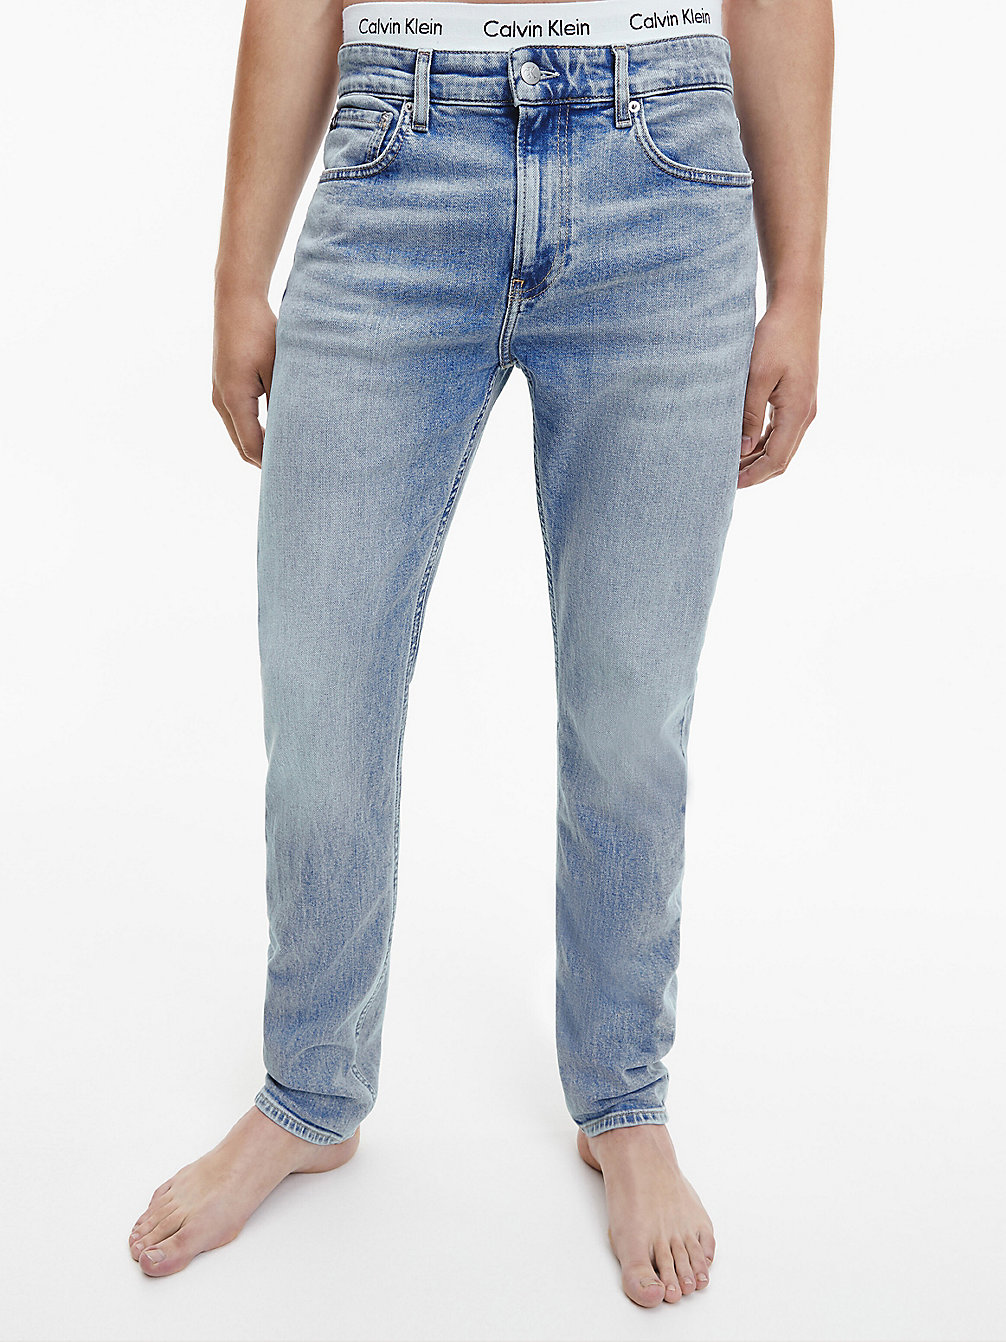 DENIM LIGHT Slim Tapered Jeans undefined Herren Calvin Klein